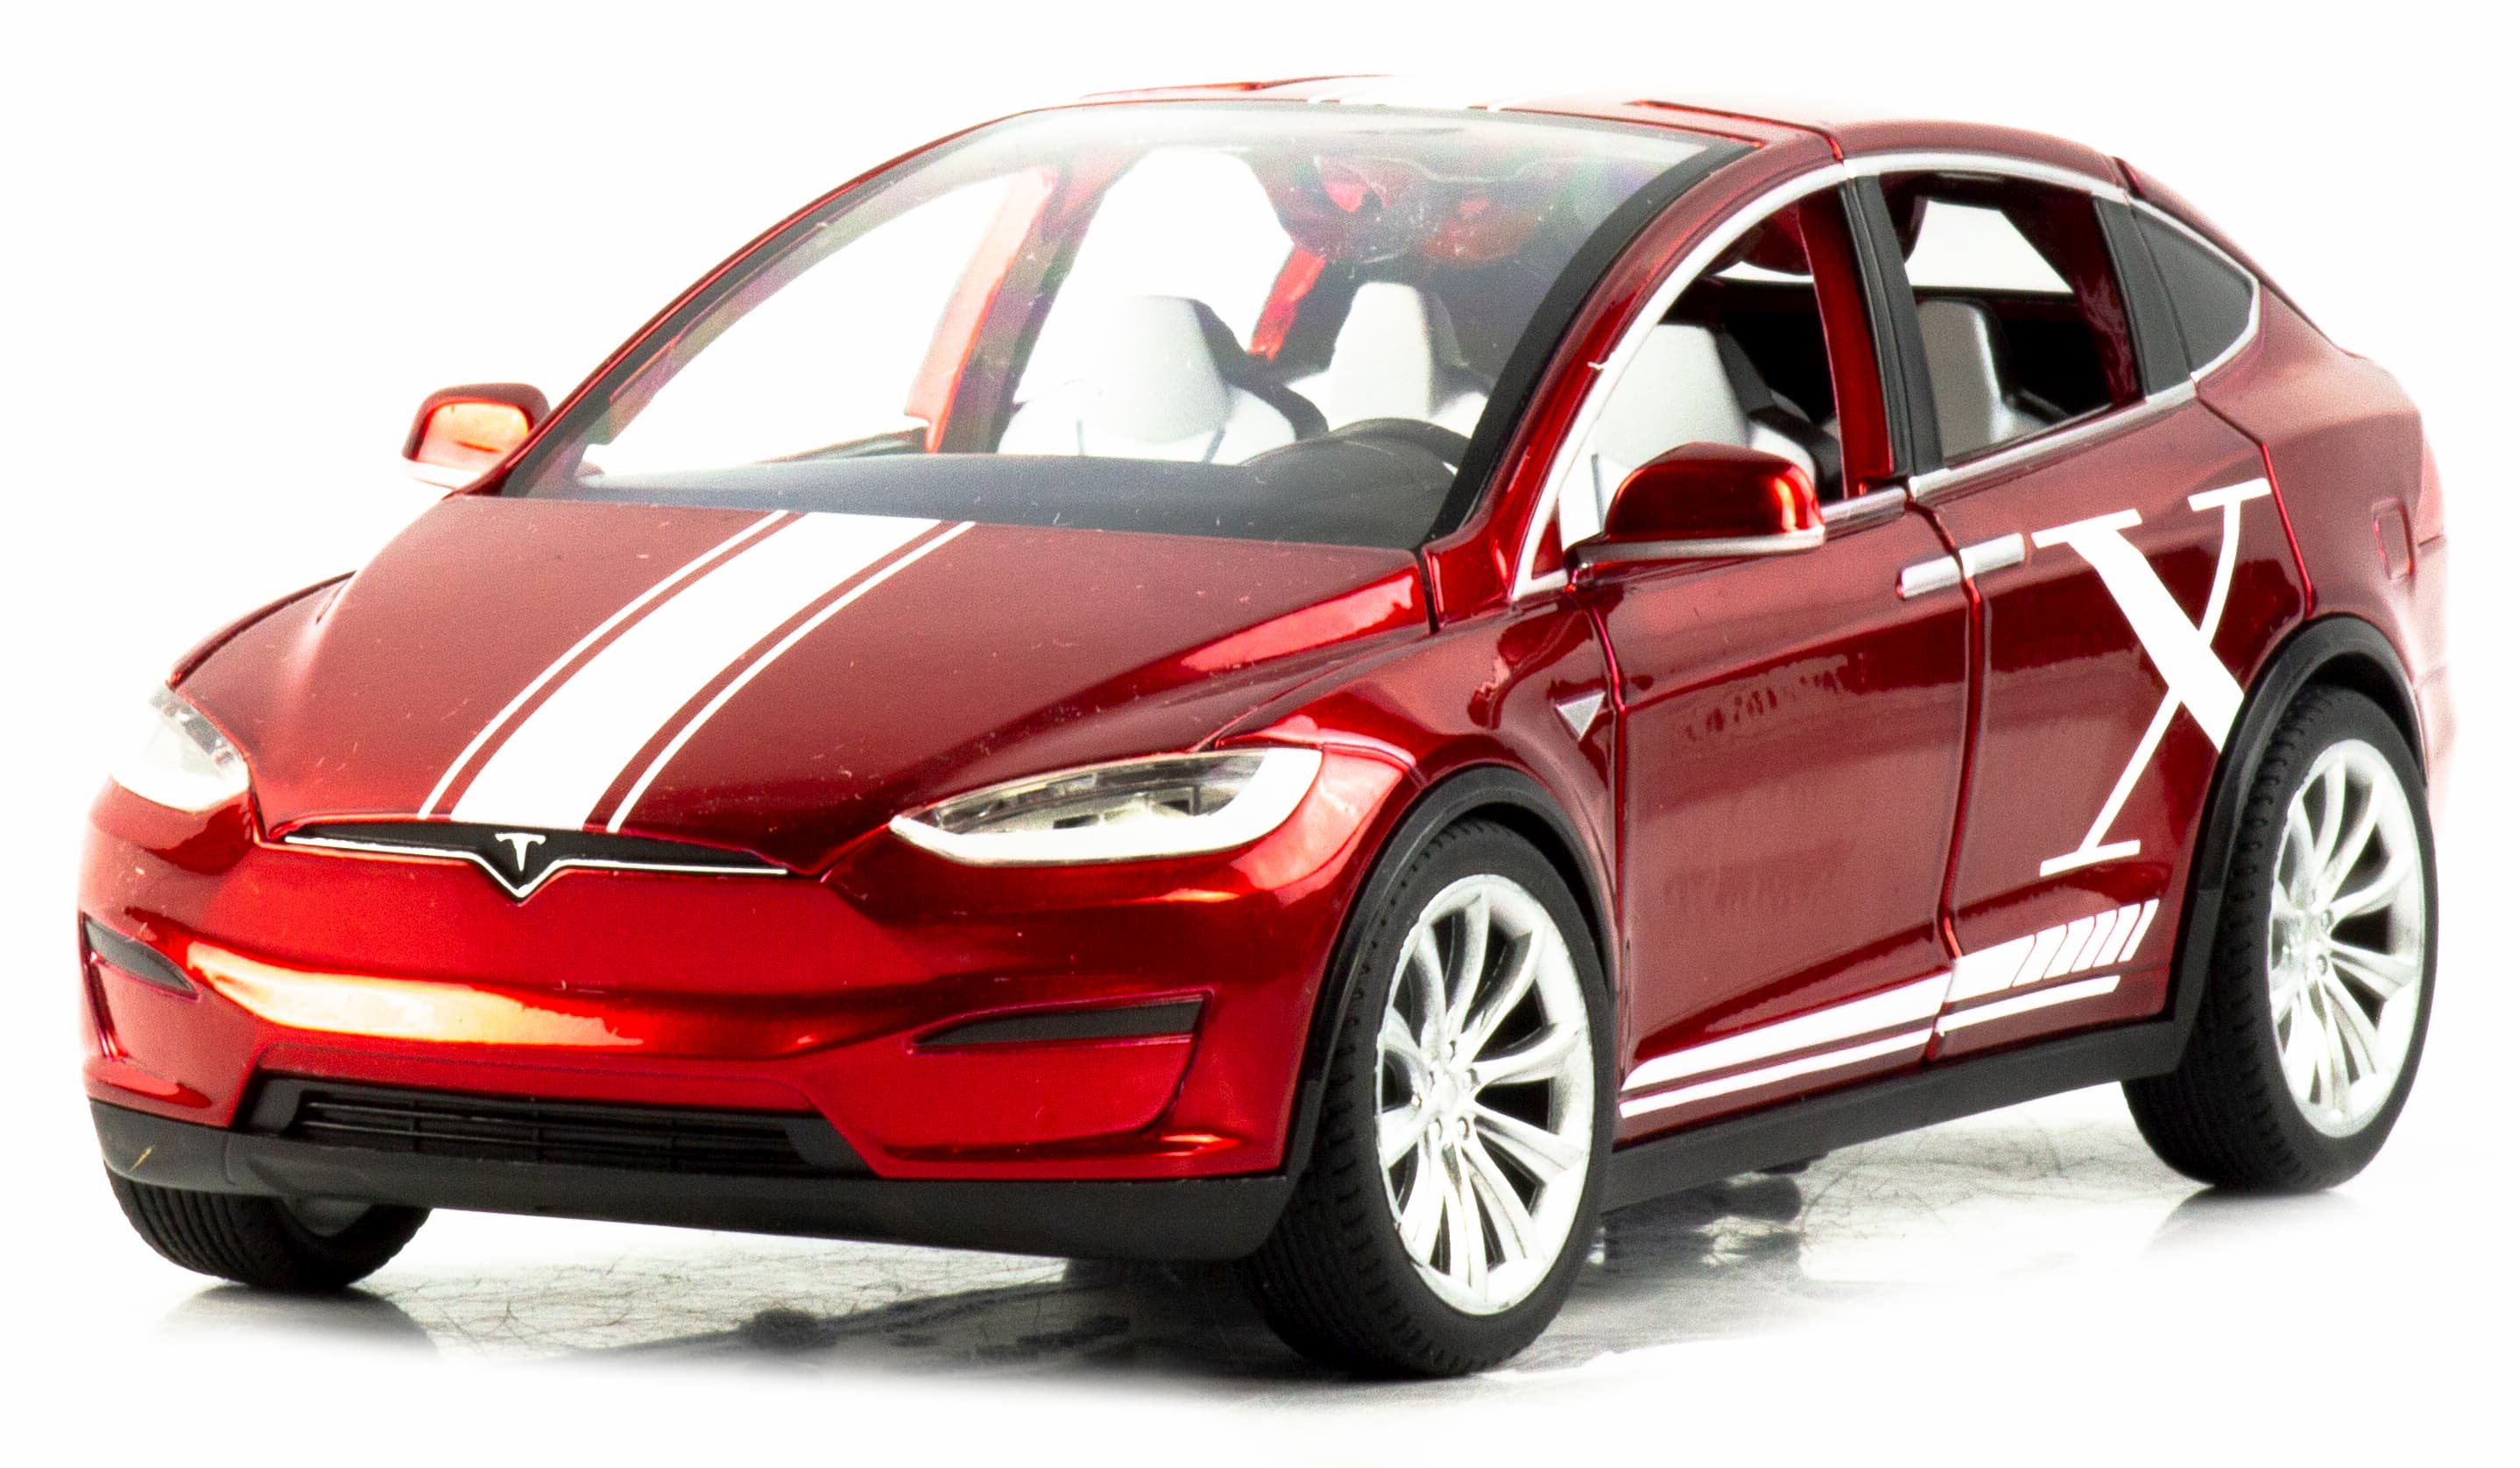 Металлическая машинка MiniAuto 1:24 «Tesla Model X» 2403B, 21 см., инерционная, свет, звук / Красный